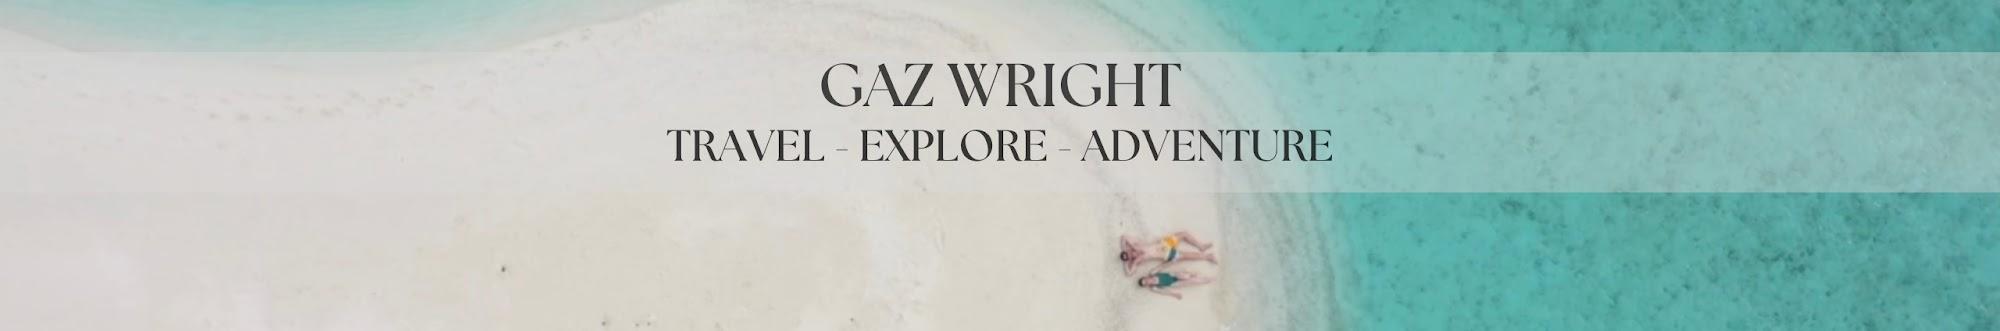 Gaz Wright